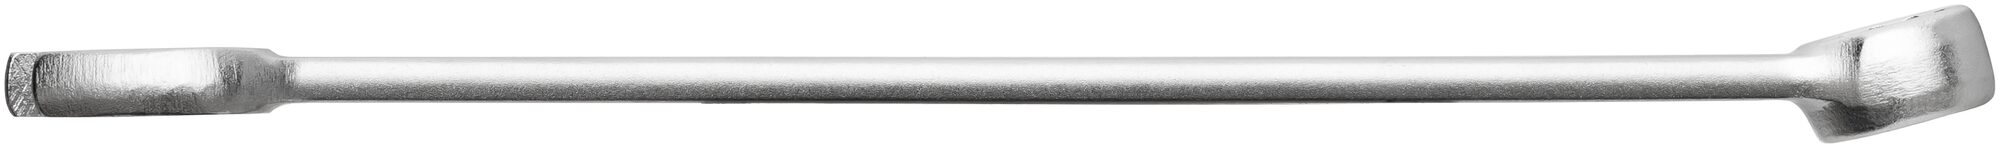 HAZET Ring-Maulschlüssel 600N-10 · Außen Doppel-Sechskant-Tractionsprofil · 10 mm